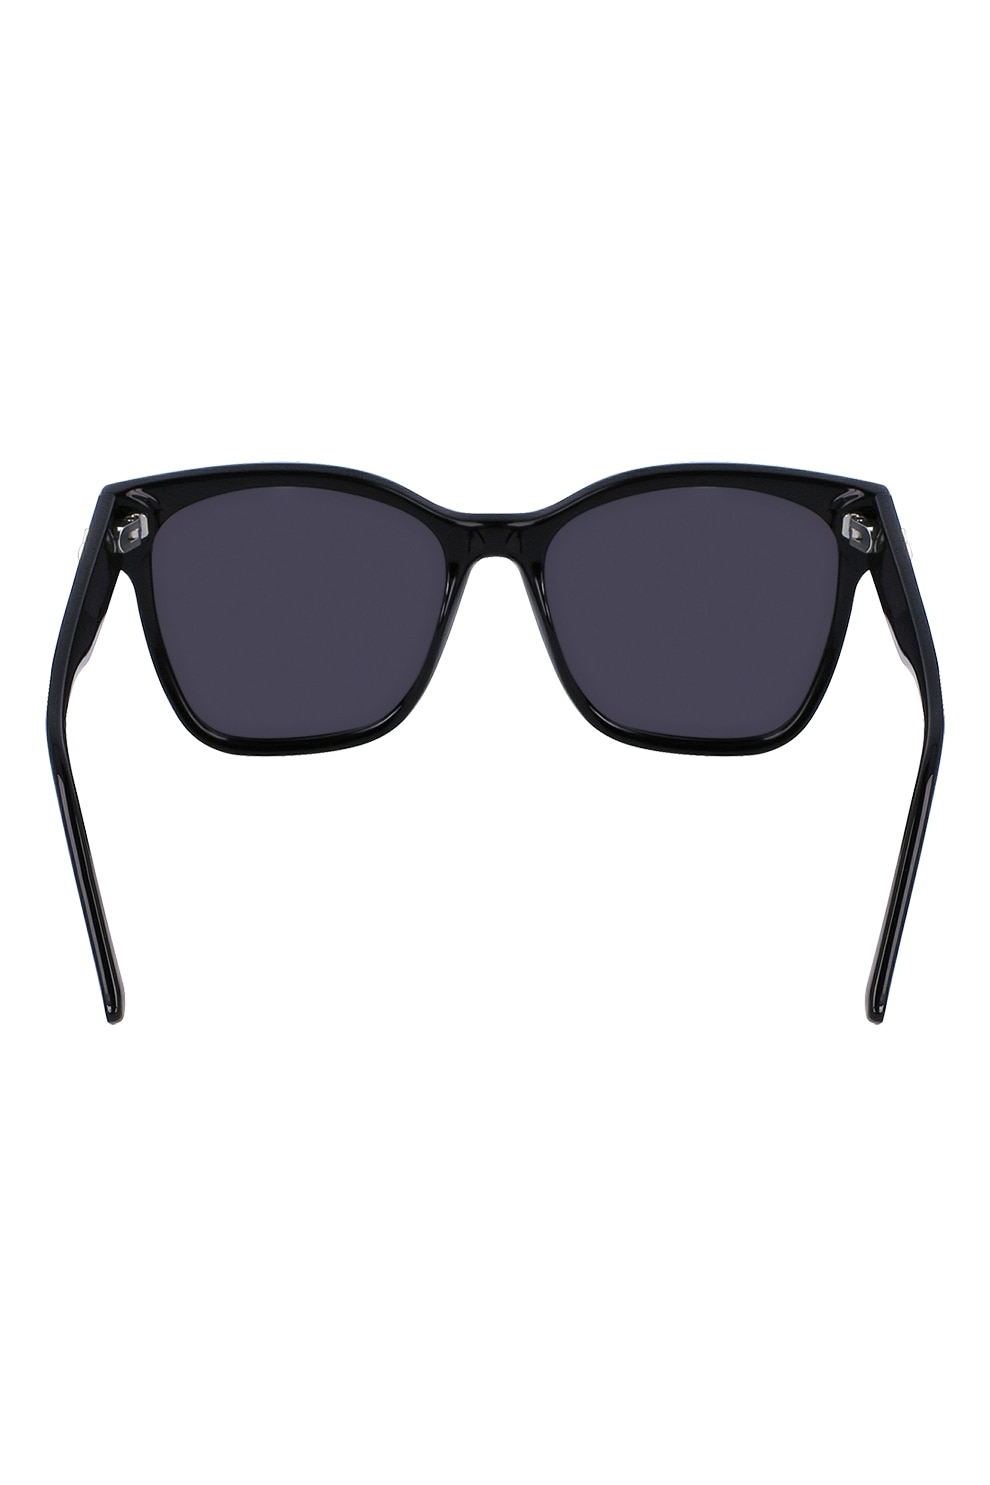 Karl Lagerfeld Szögletes Napszemüveg Egyszínű Lencsékkel Fekete 55 17 145 Emag Hu